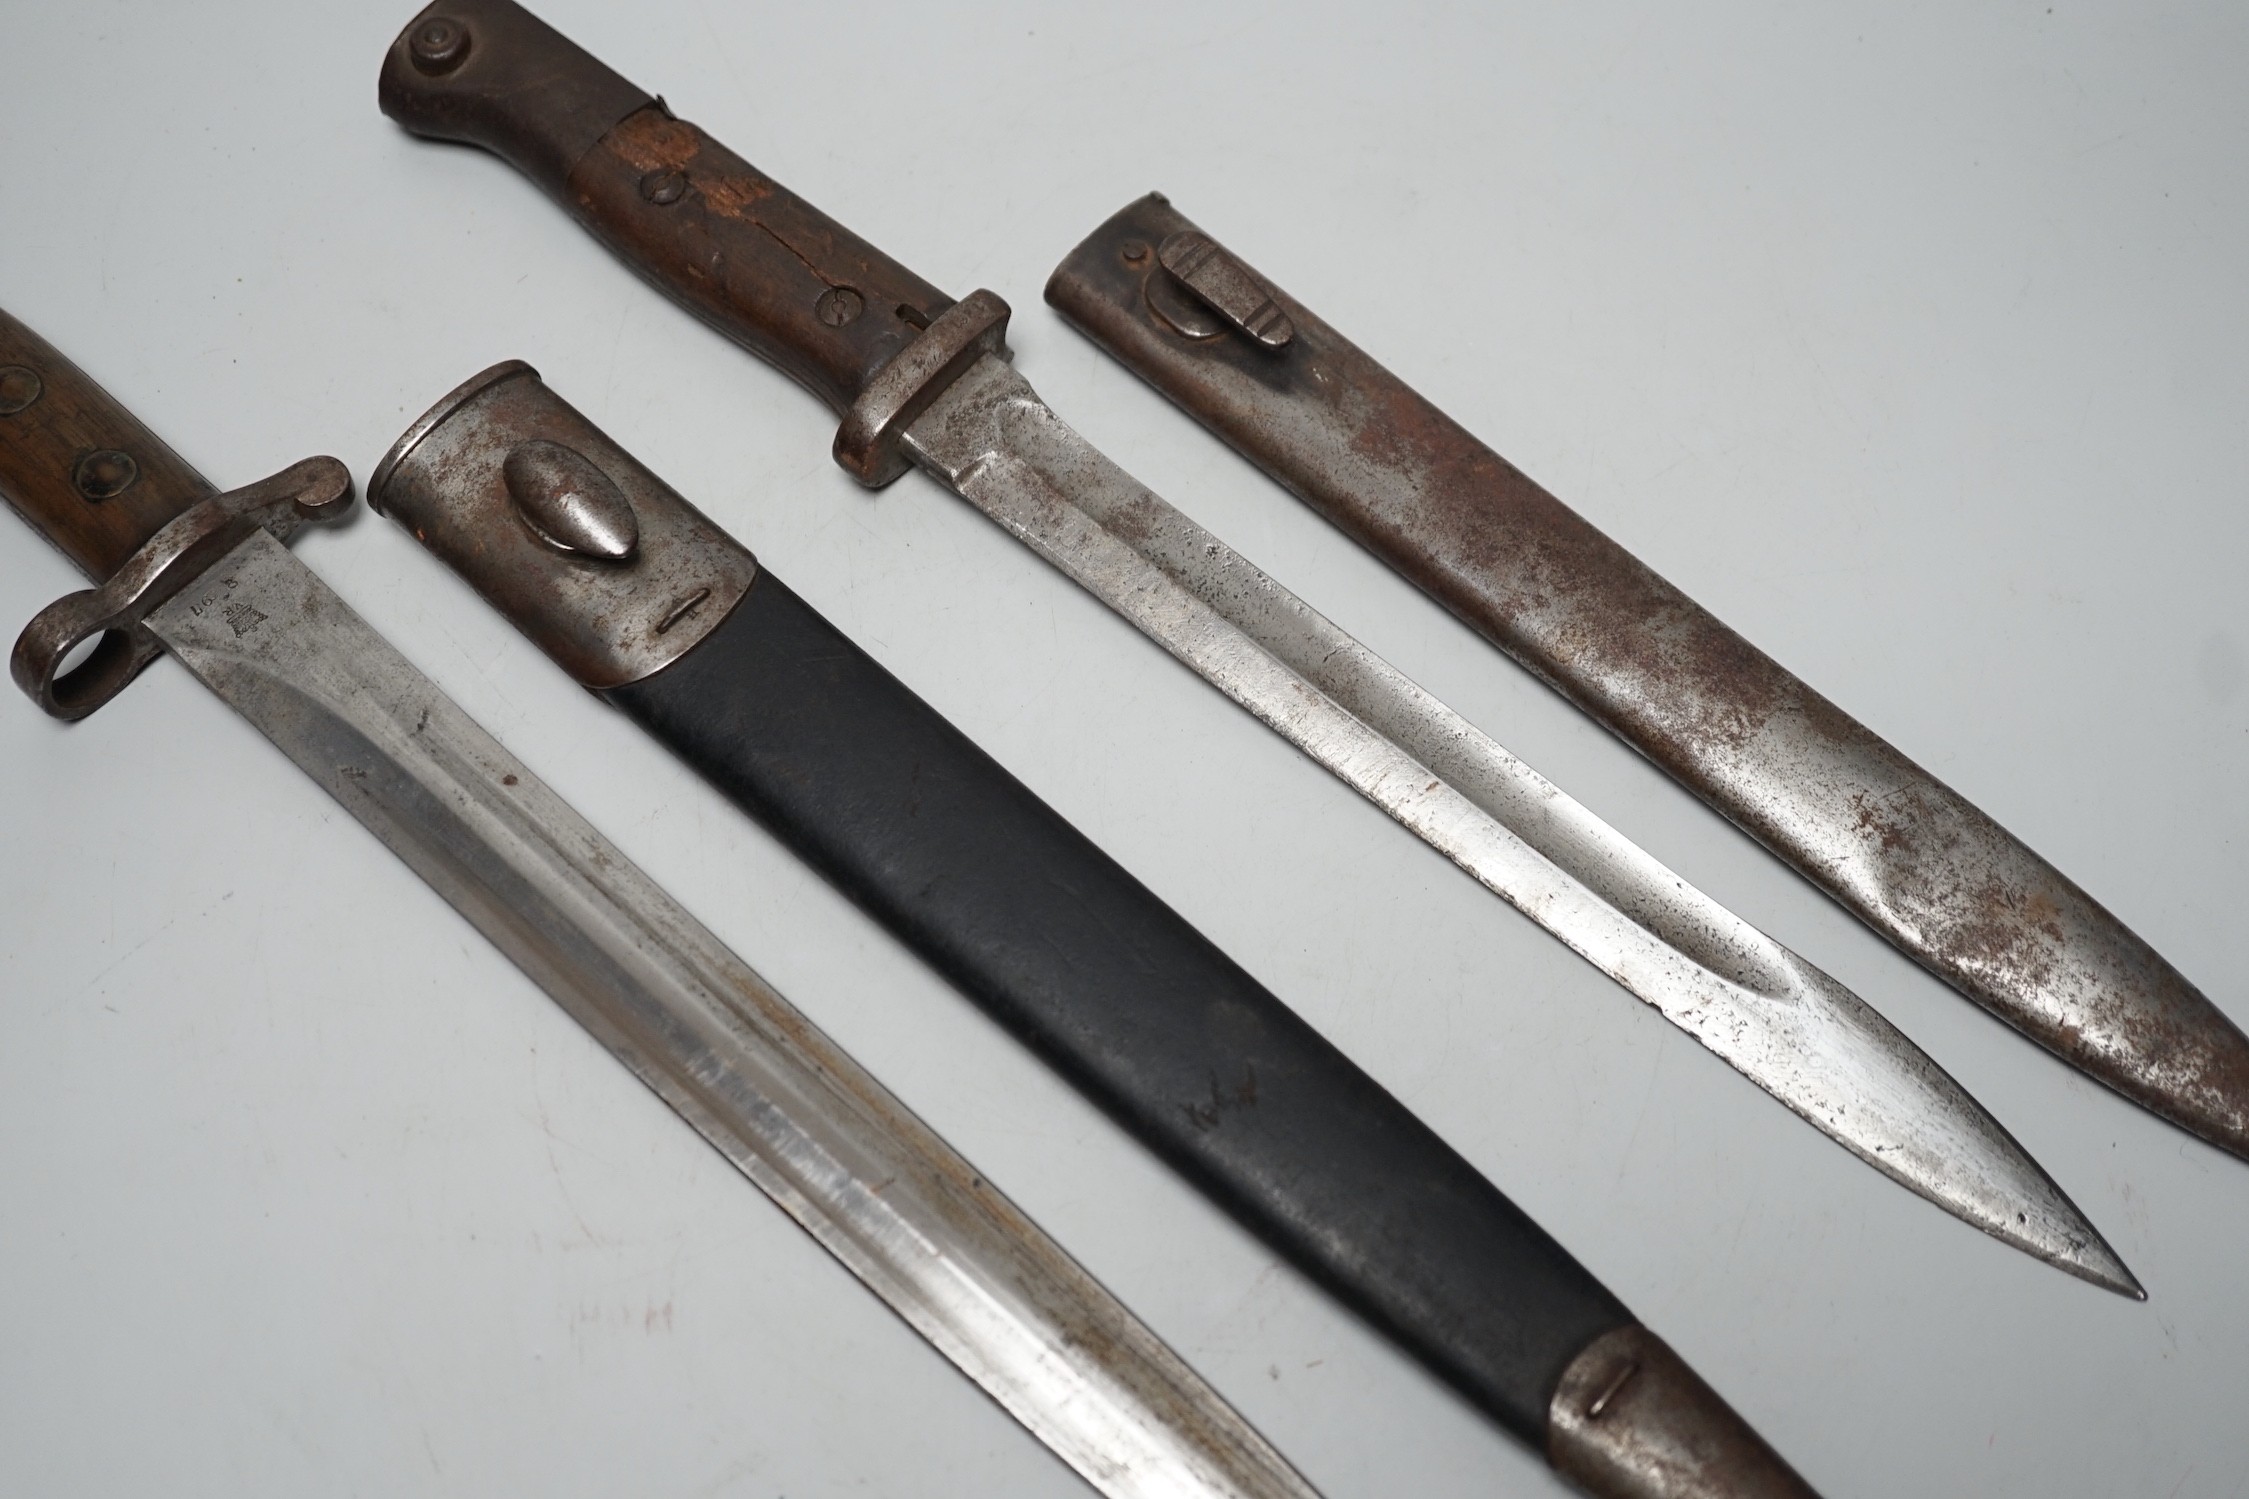 A 19th century British bayonet and scabbard together with a German bayonet and scabbard, the blade stamped Gottlieb Hammesfahr Solingen Foche